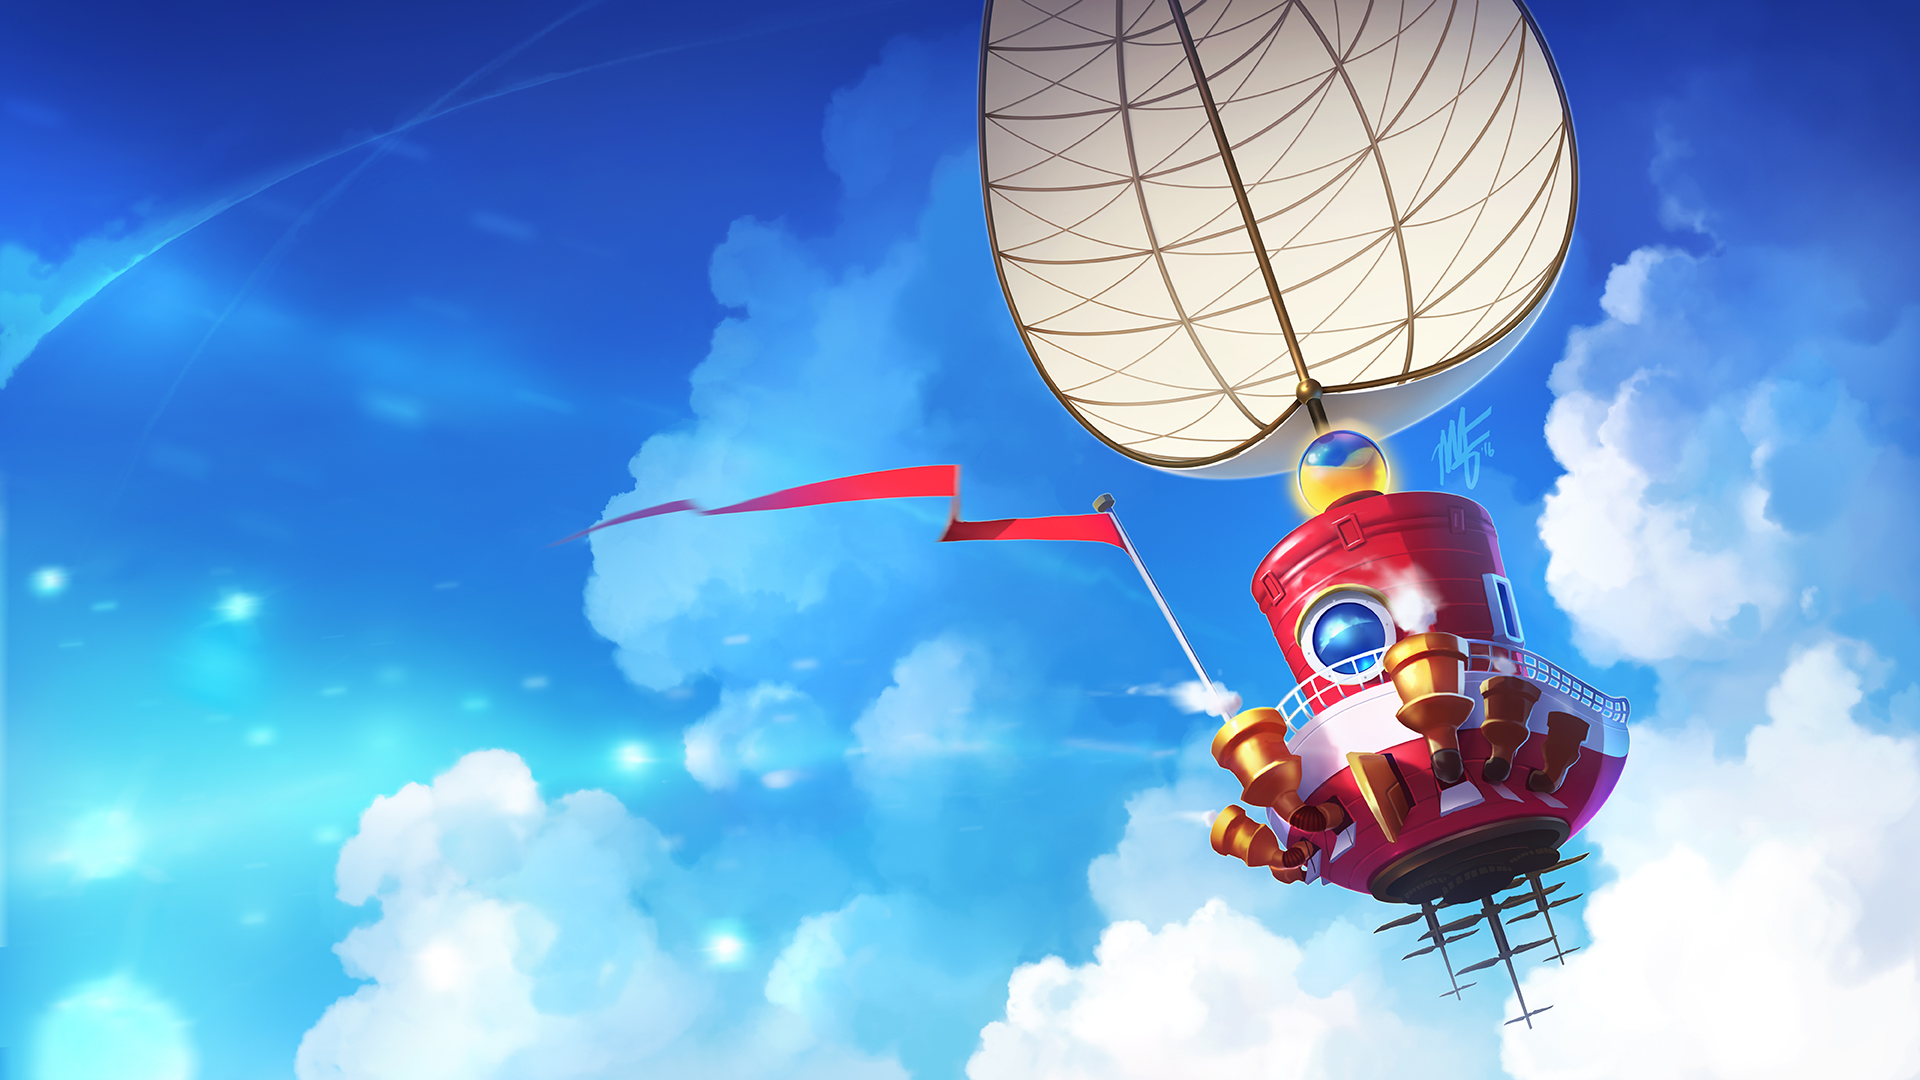 odyssey wallpaper,sky,hot air ballooning,hot air balloon,cartoon,cloud